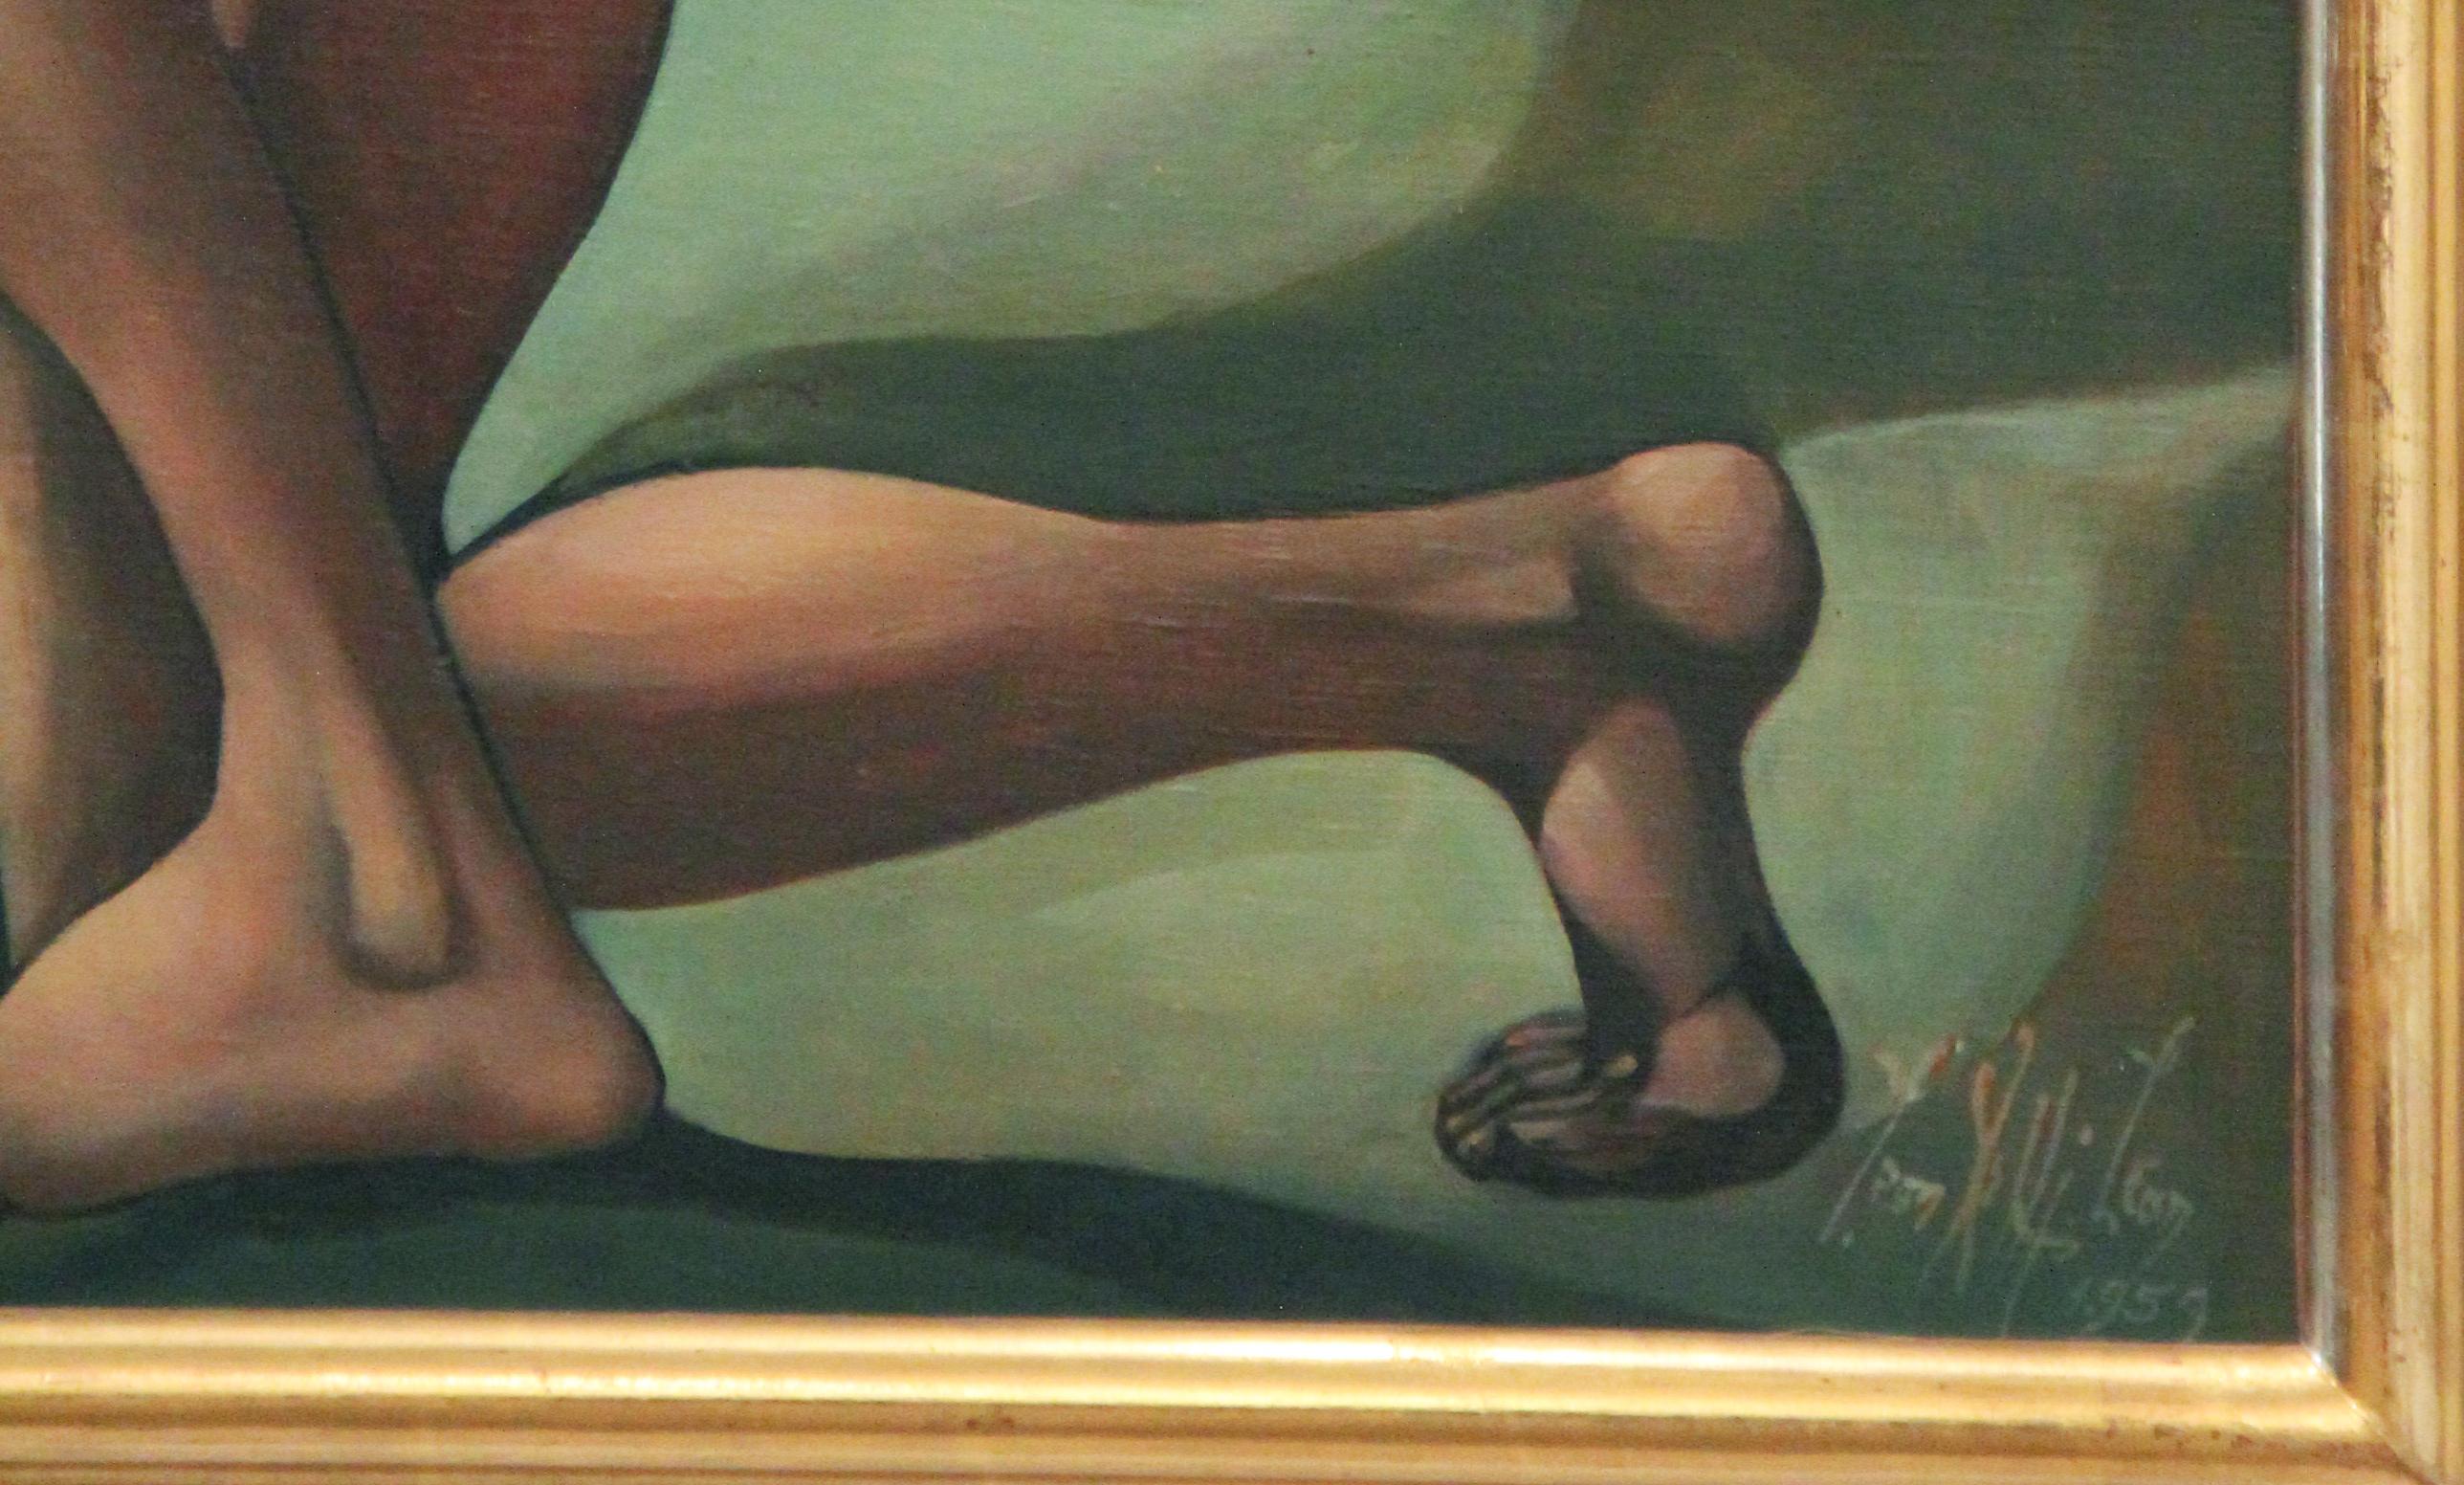 Venus aus den Händen des Todes herausgegeben, surrealistisch, Akt, 1959, Öl auf Leinwand (Braun), Nude Painting, von Leon Kelly